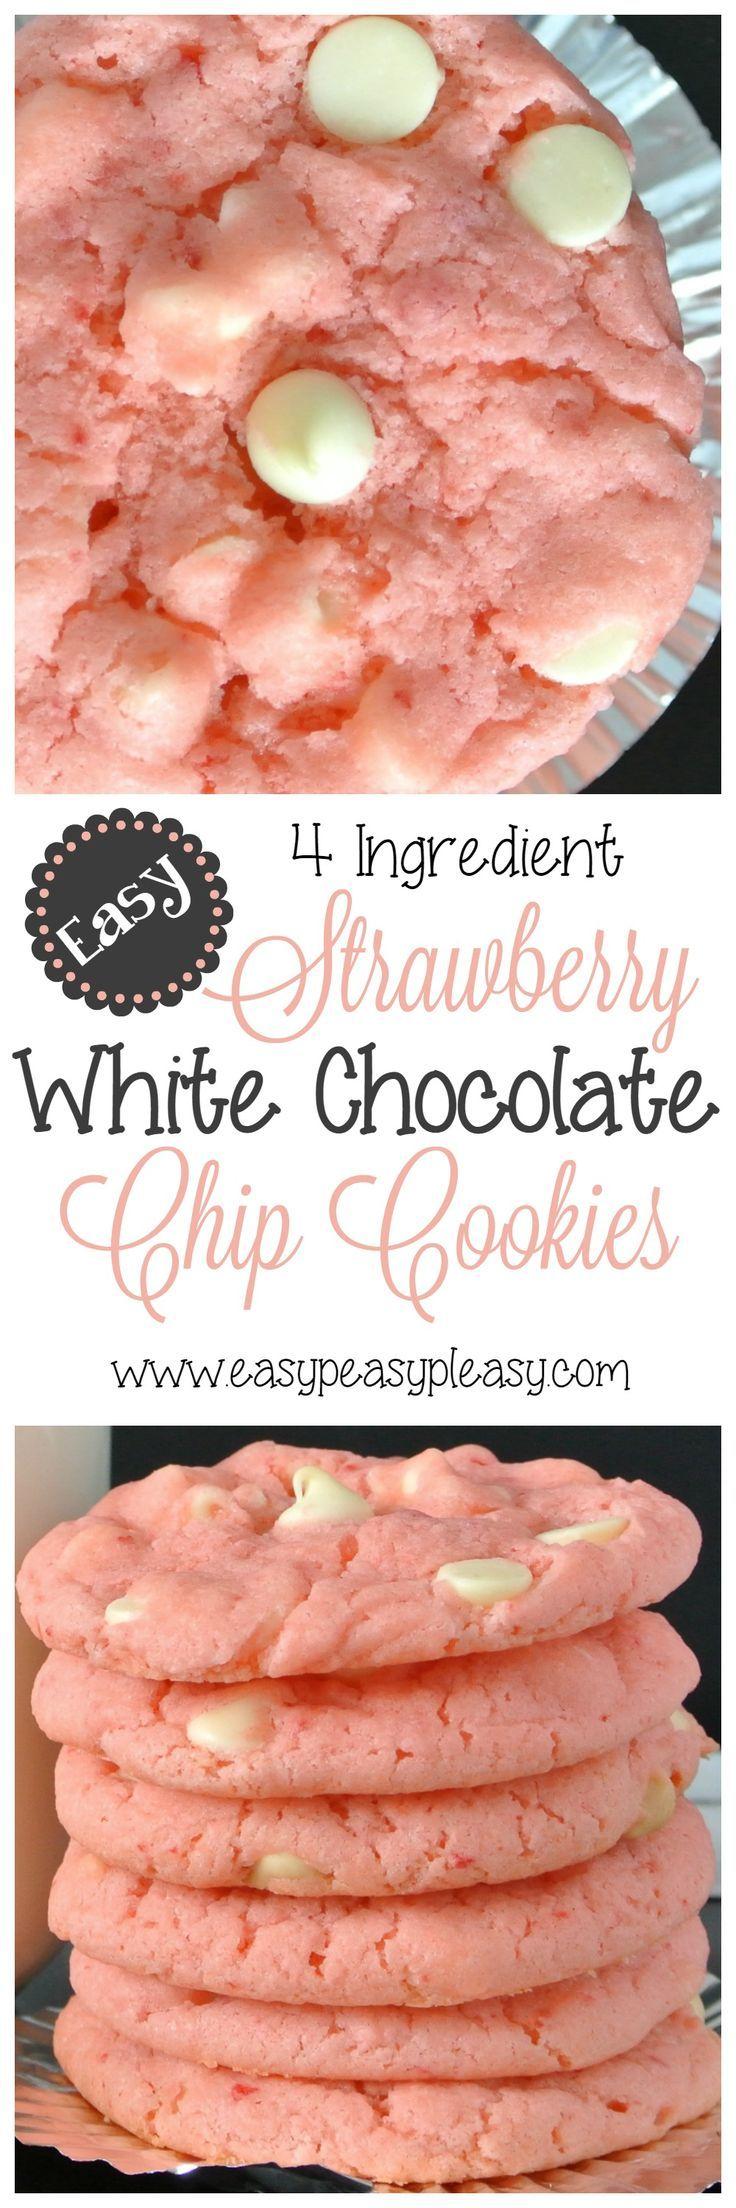 زفاف - 4 Ingredient Strawberry White Chocolate Chip Cookies